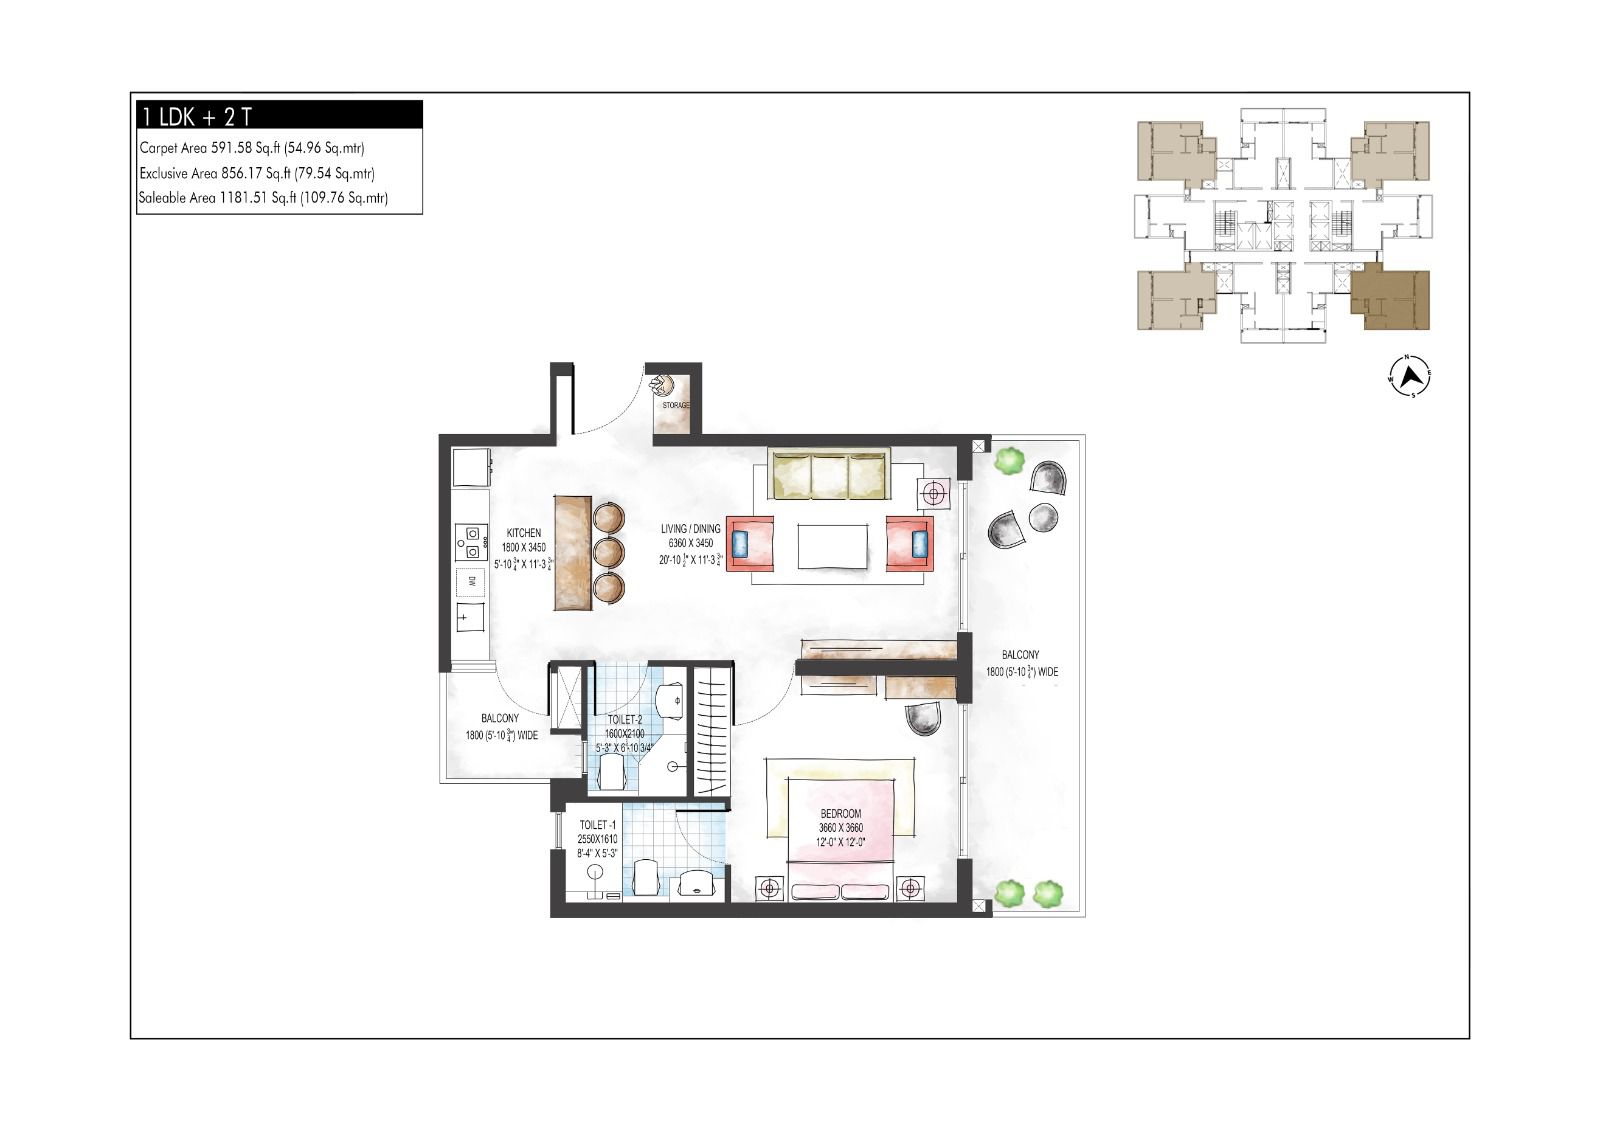 Krisumi Waterfall Suites floor plan